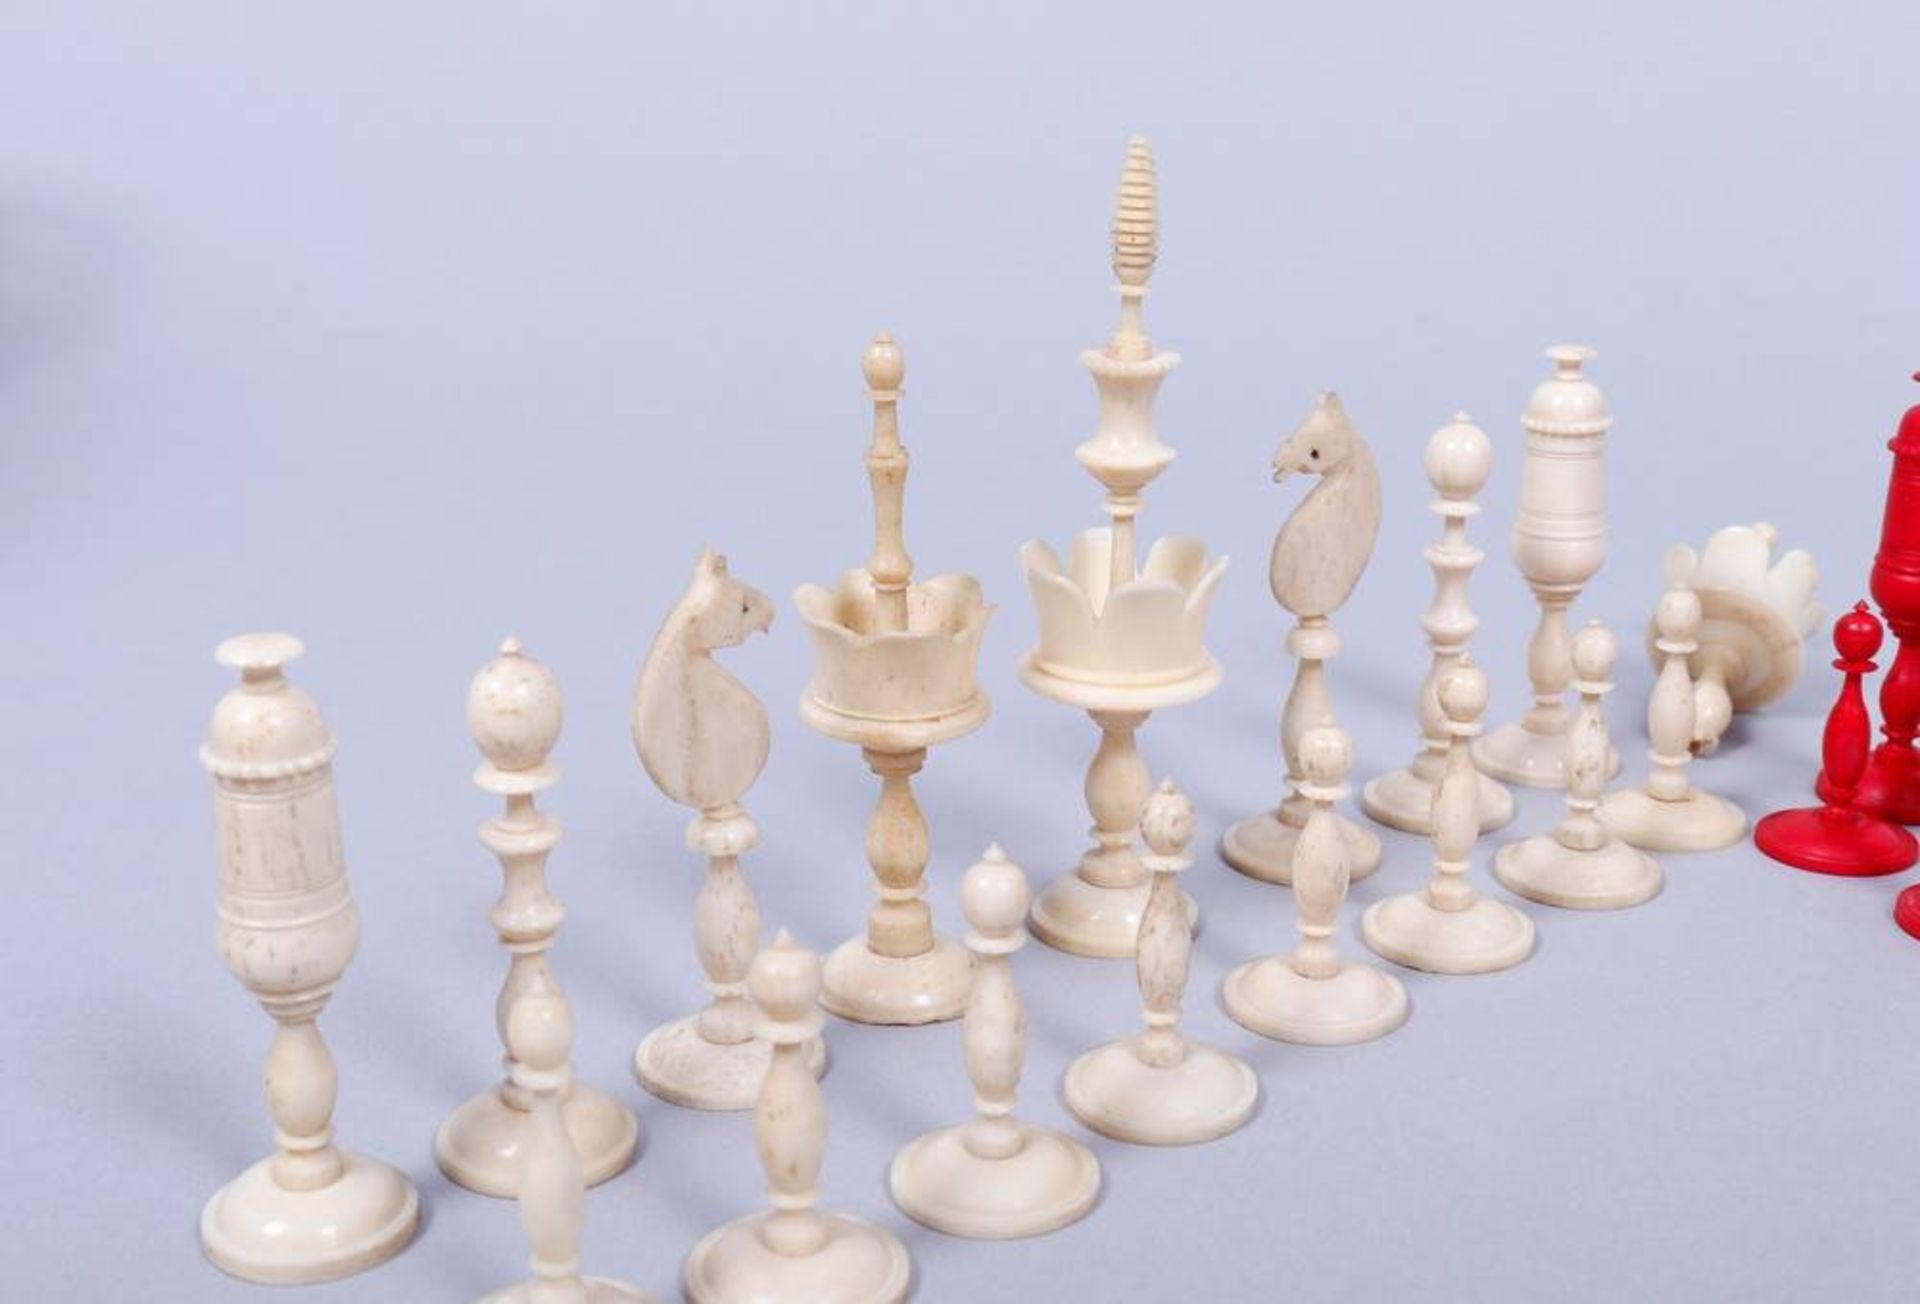 Schachfiguren, wohl Nürnberg, 19.Jh. Einkorbsatz, Elfenbein, partiell rot gefärbt, H 3,5-9,5cm, 1 - Bild 3 aus 3